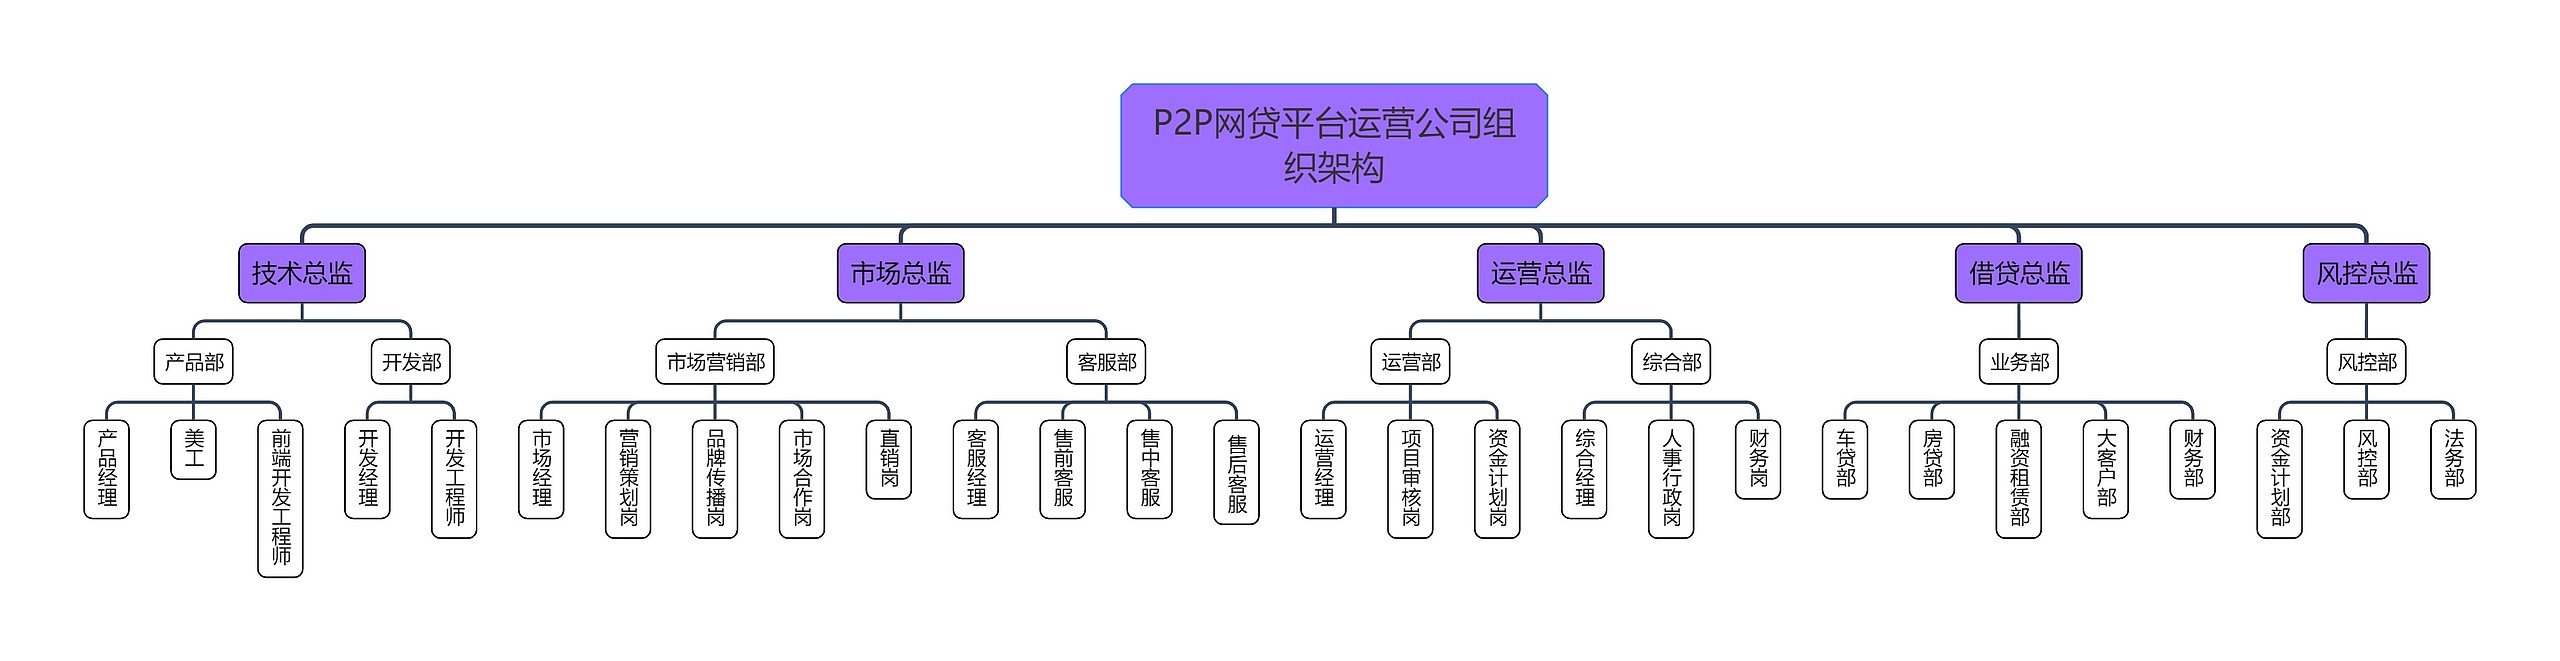 P2P网贷平台运营公司组织架构